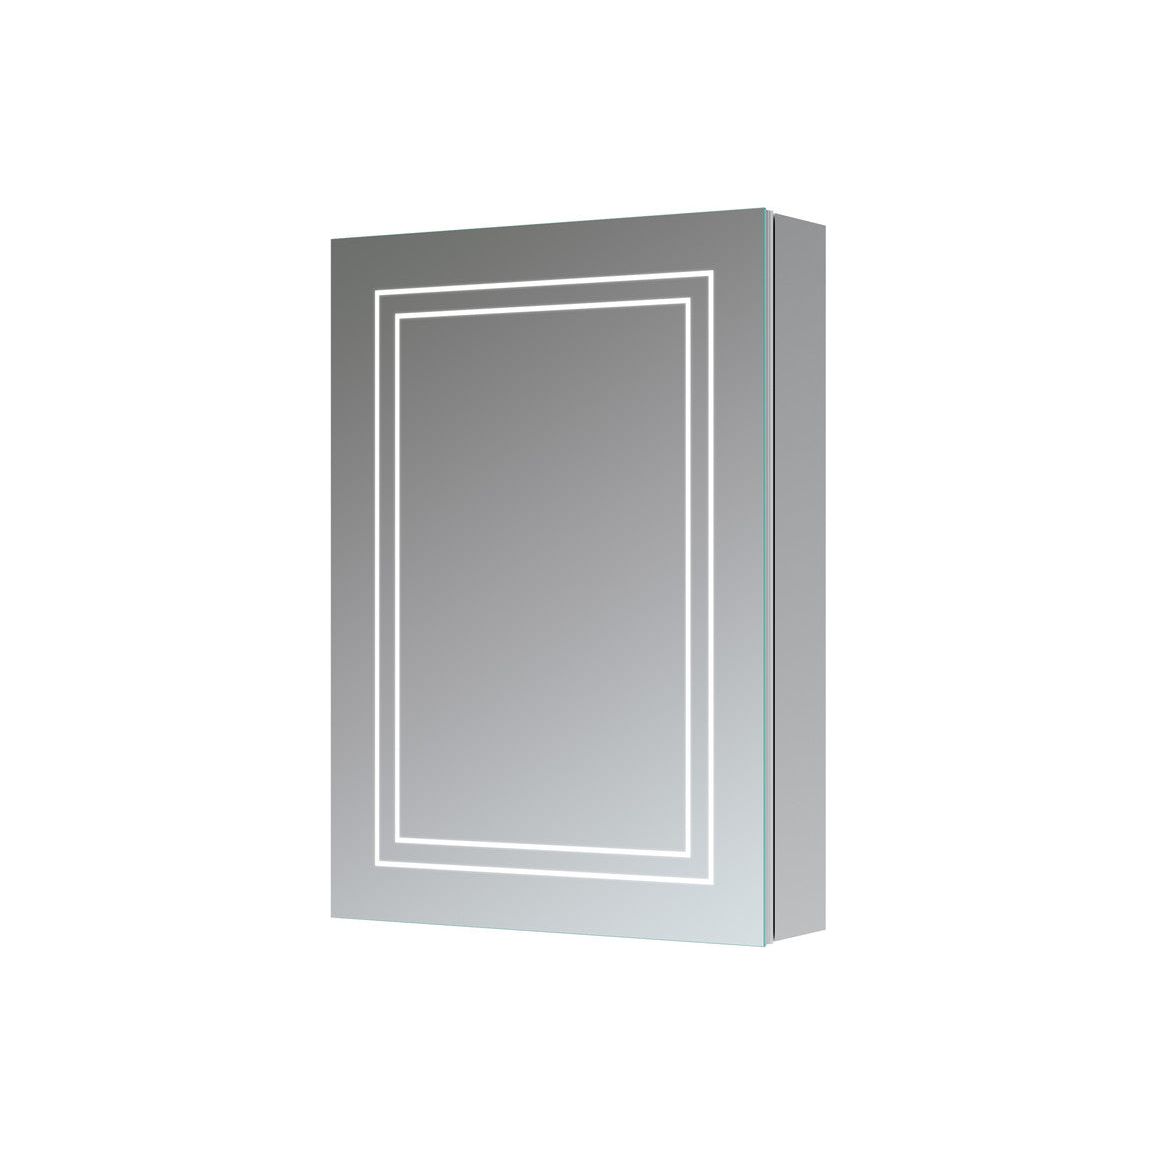 Sirakoro 500mm 1 Door Front-Lit LED Mirror Cabinet